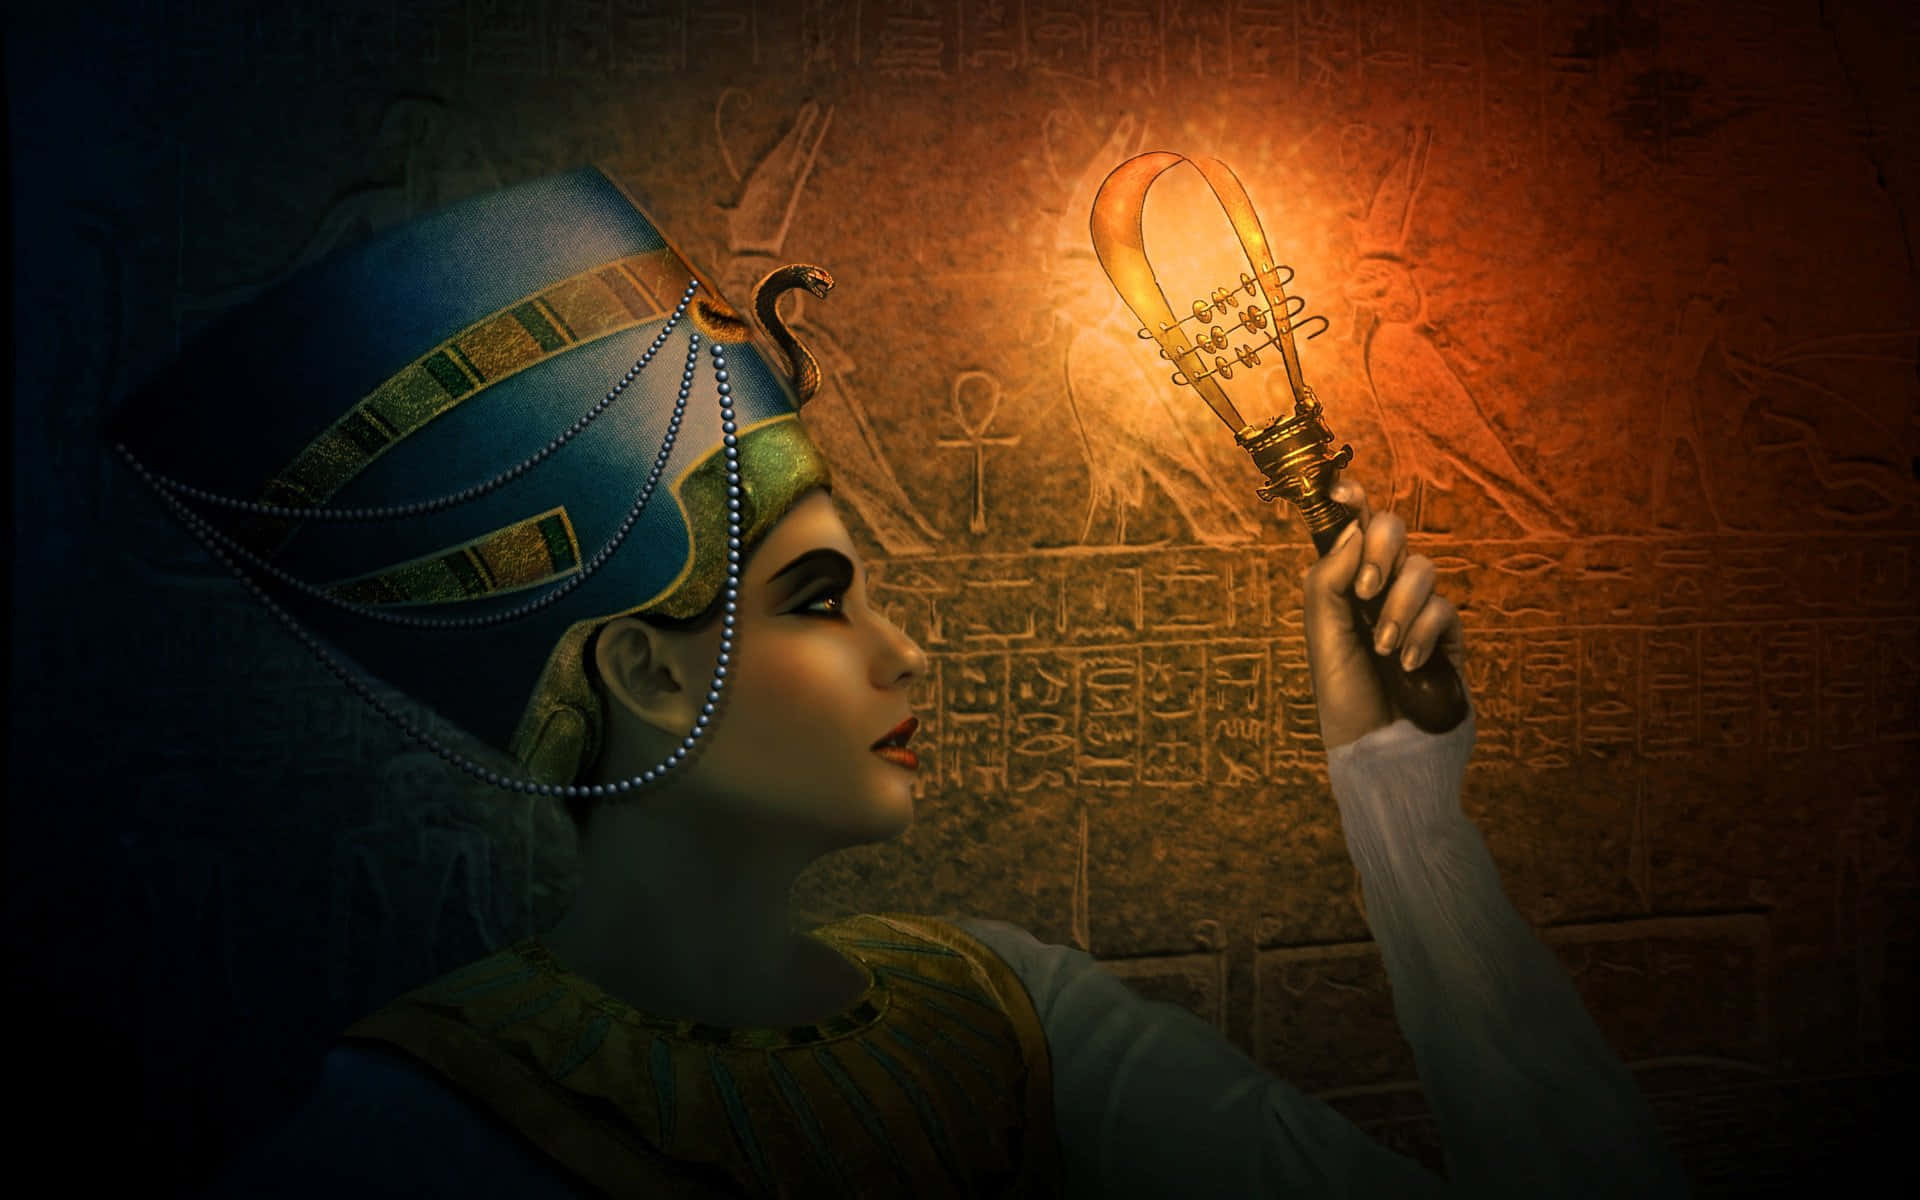 Portrait of Cleopatra, Greek Ptolemaic queen